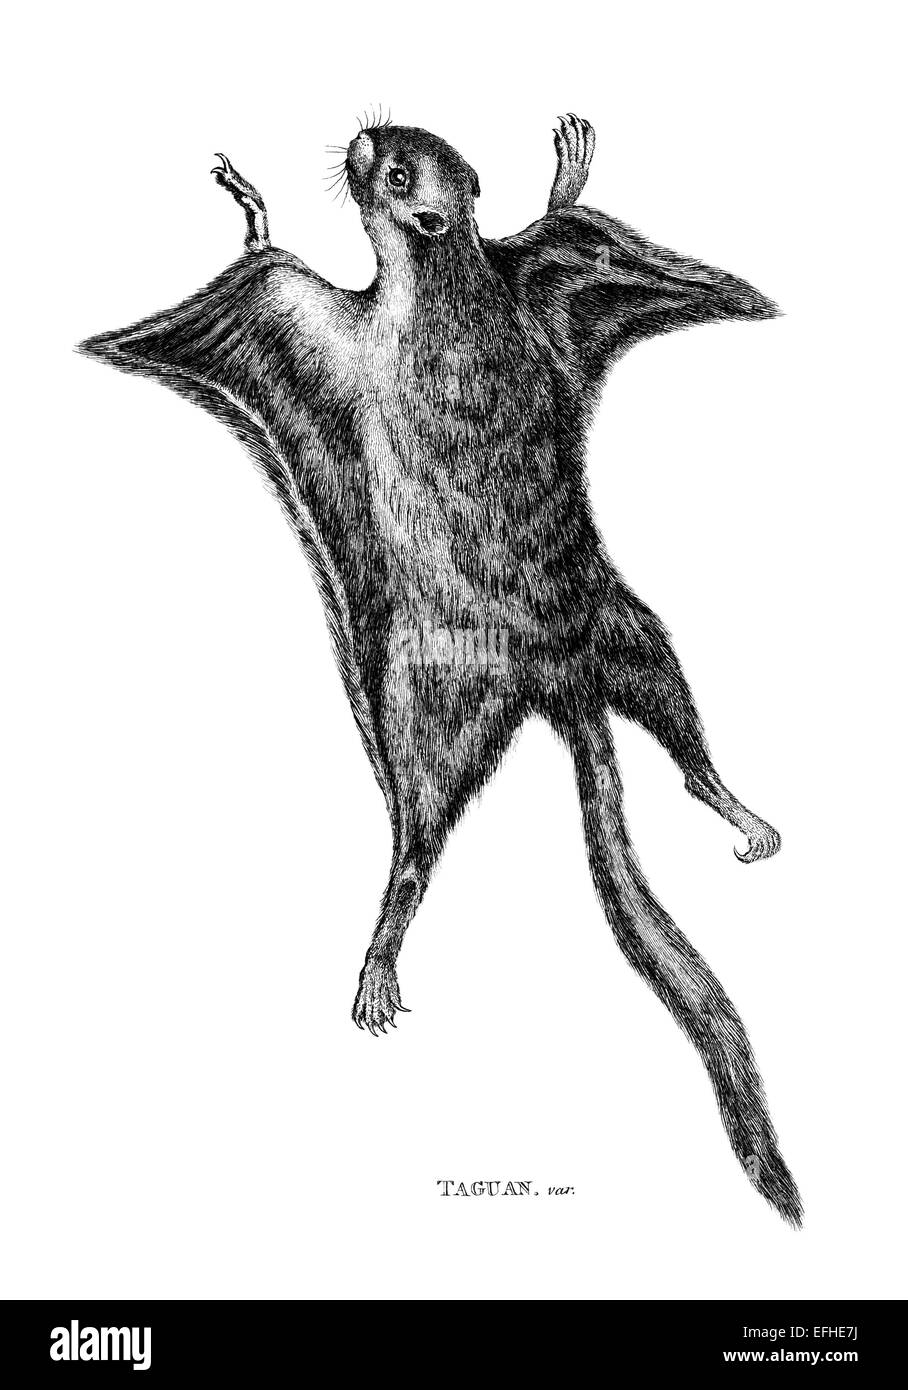 Incisione in stile vittoriano di uno scoiattolo battenti, taguan o. Restaurata digitalmente immagine da una metà del XIX secolo enciclopedia. Foto Stock